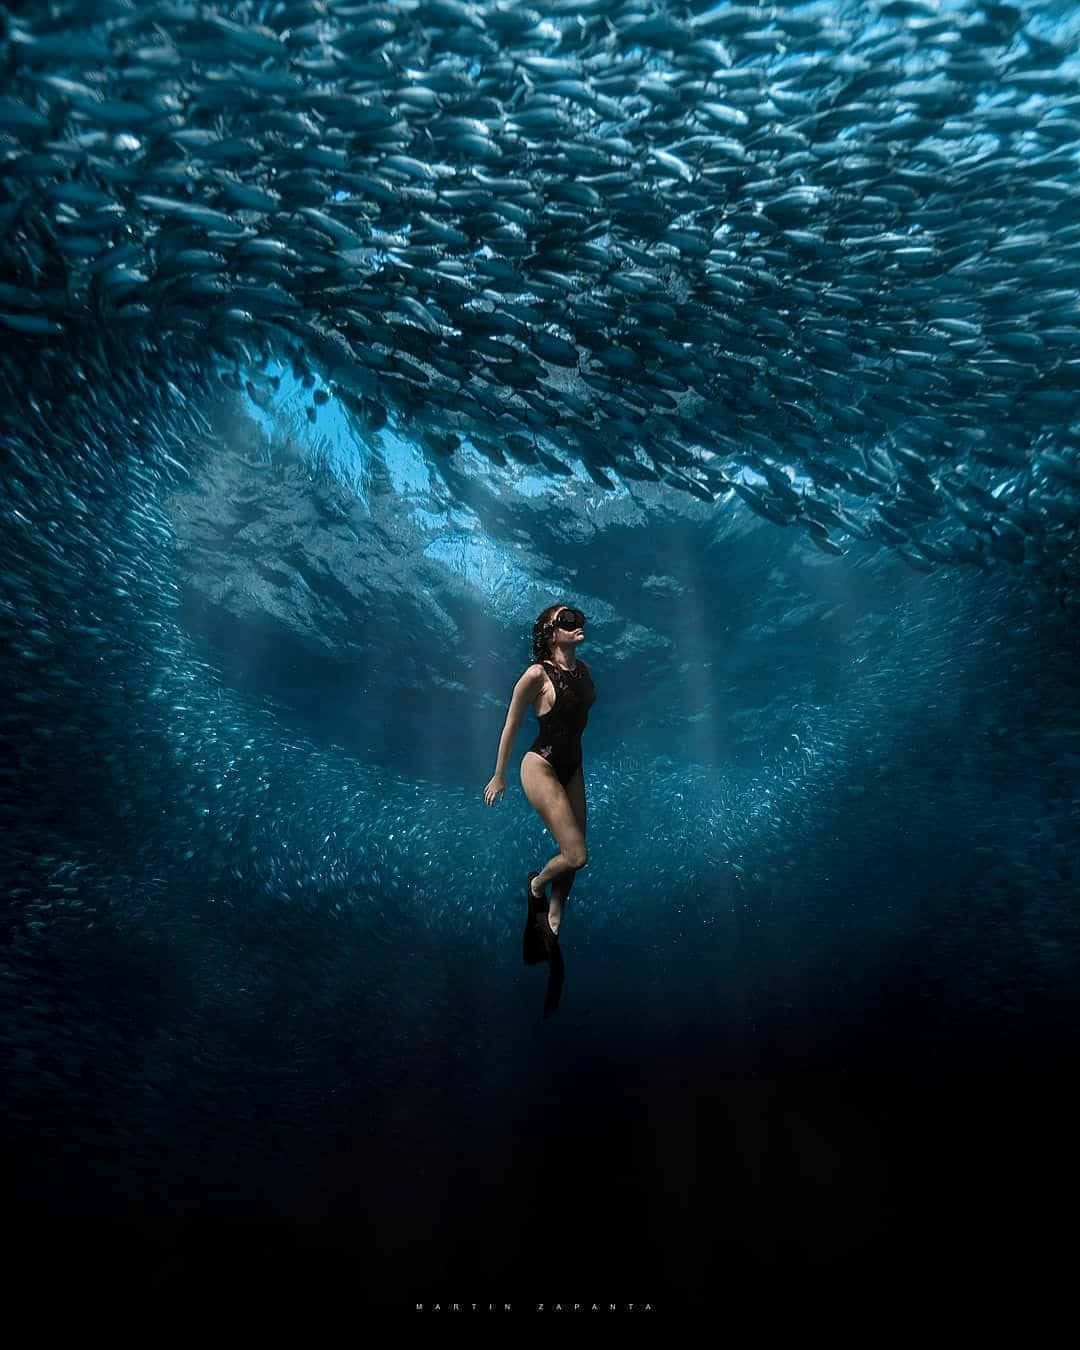 Diving into an underwater, dark world.